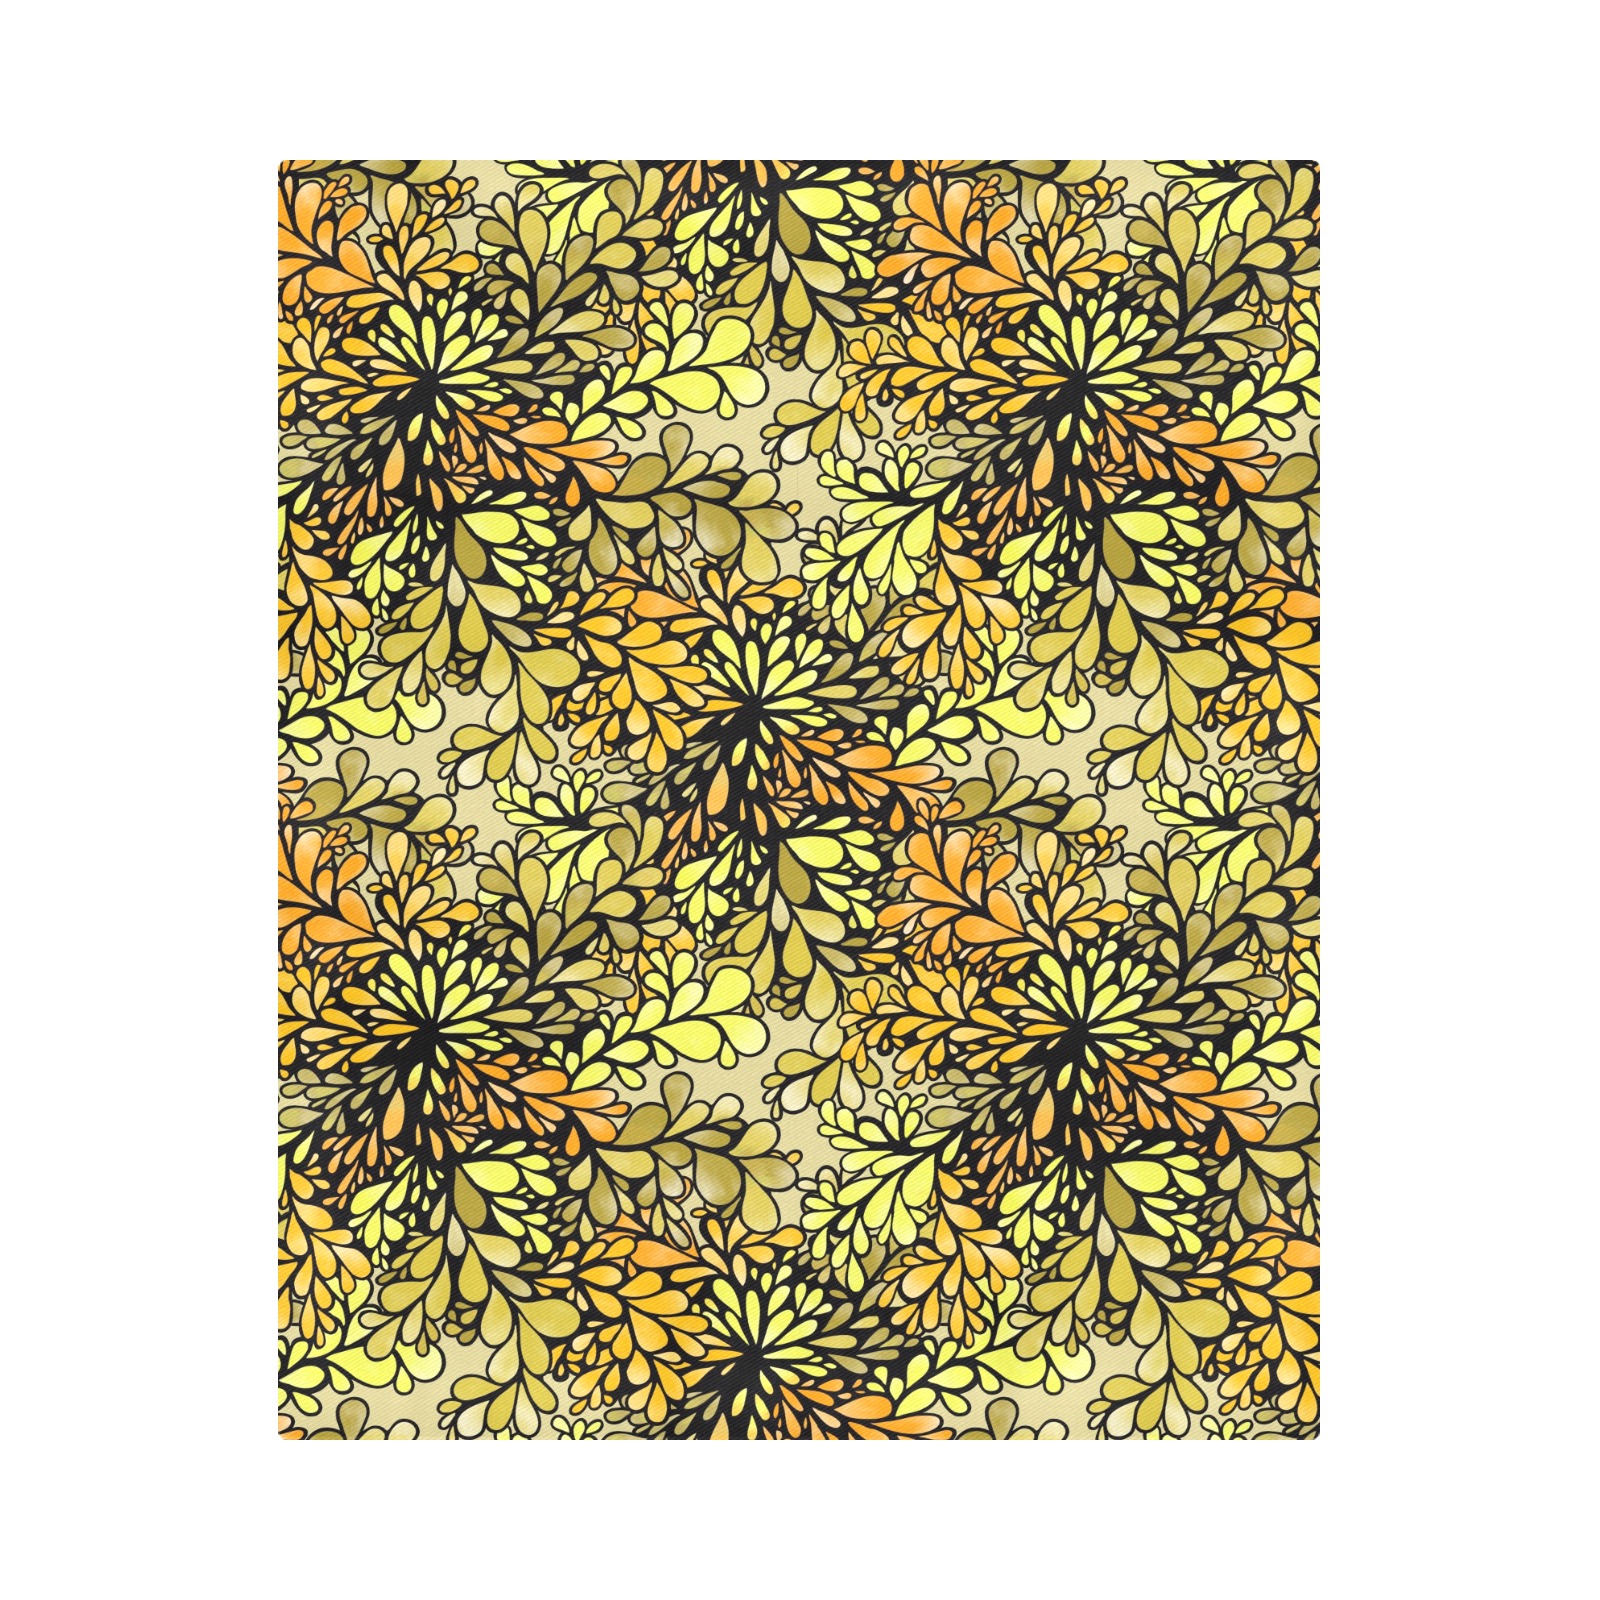 Citrus Splash Duvet Cover 86"x70" ( All-over-print)